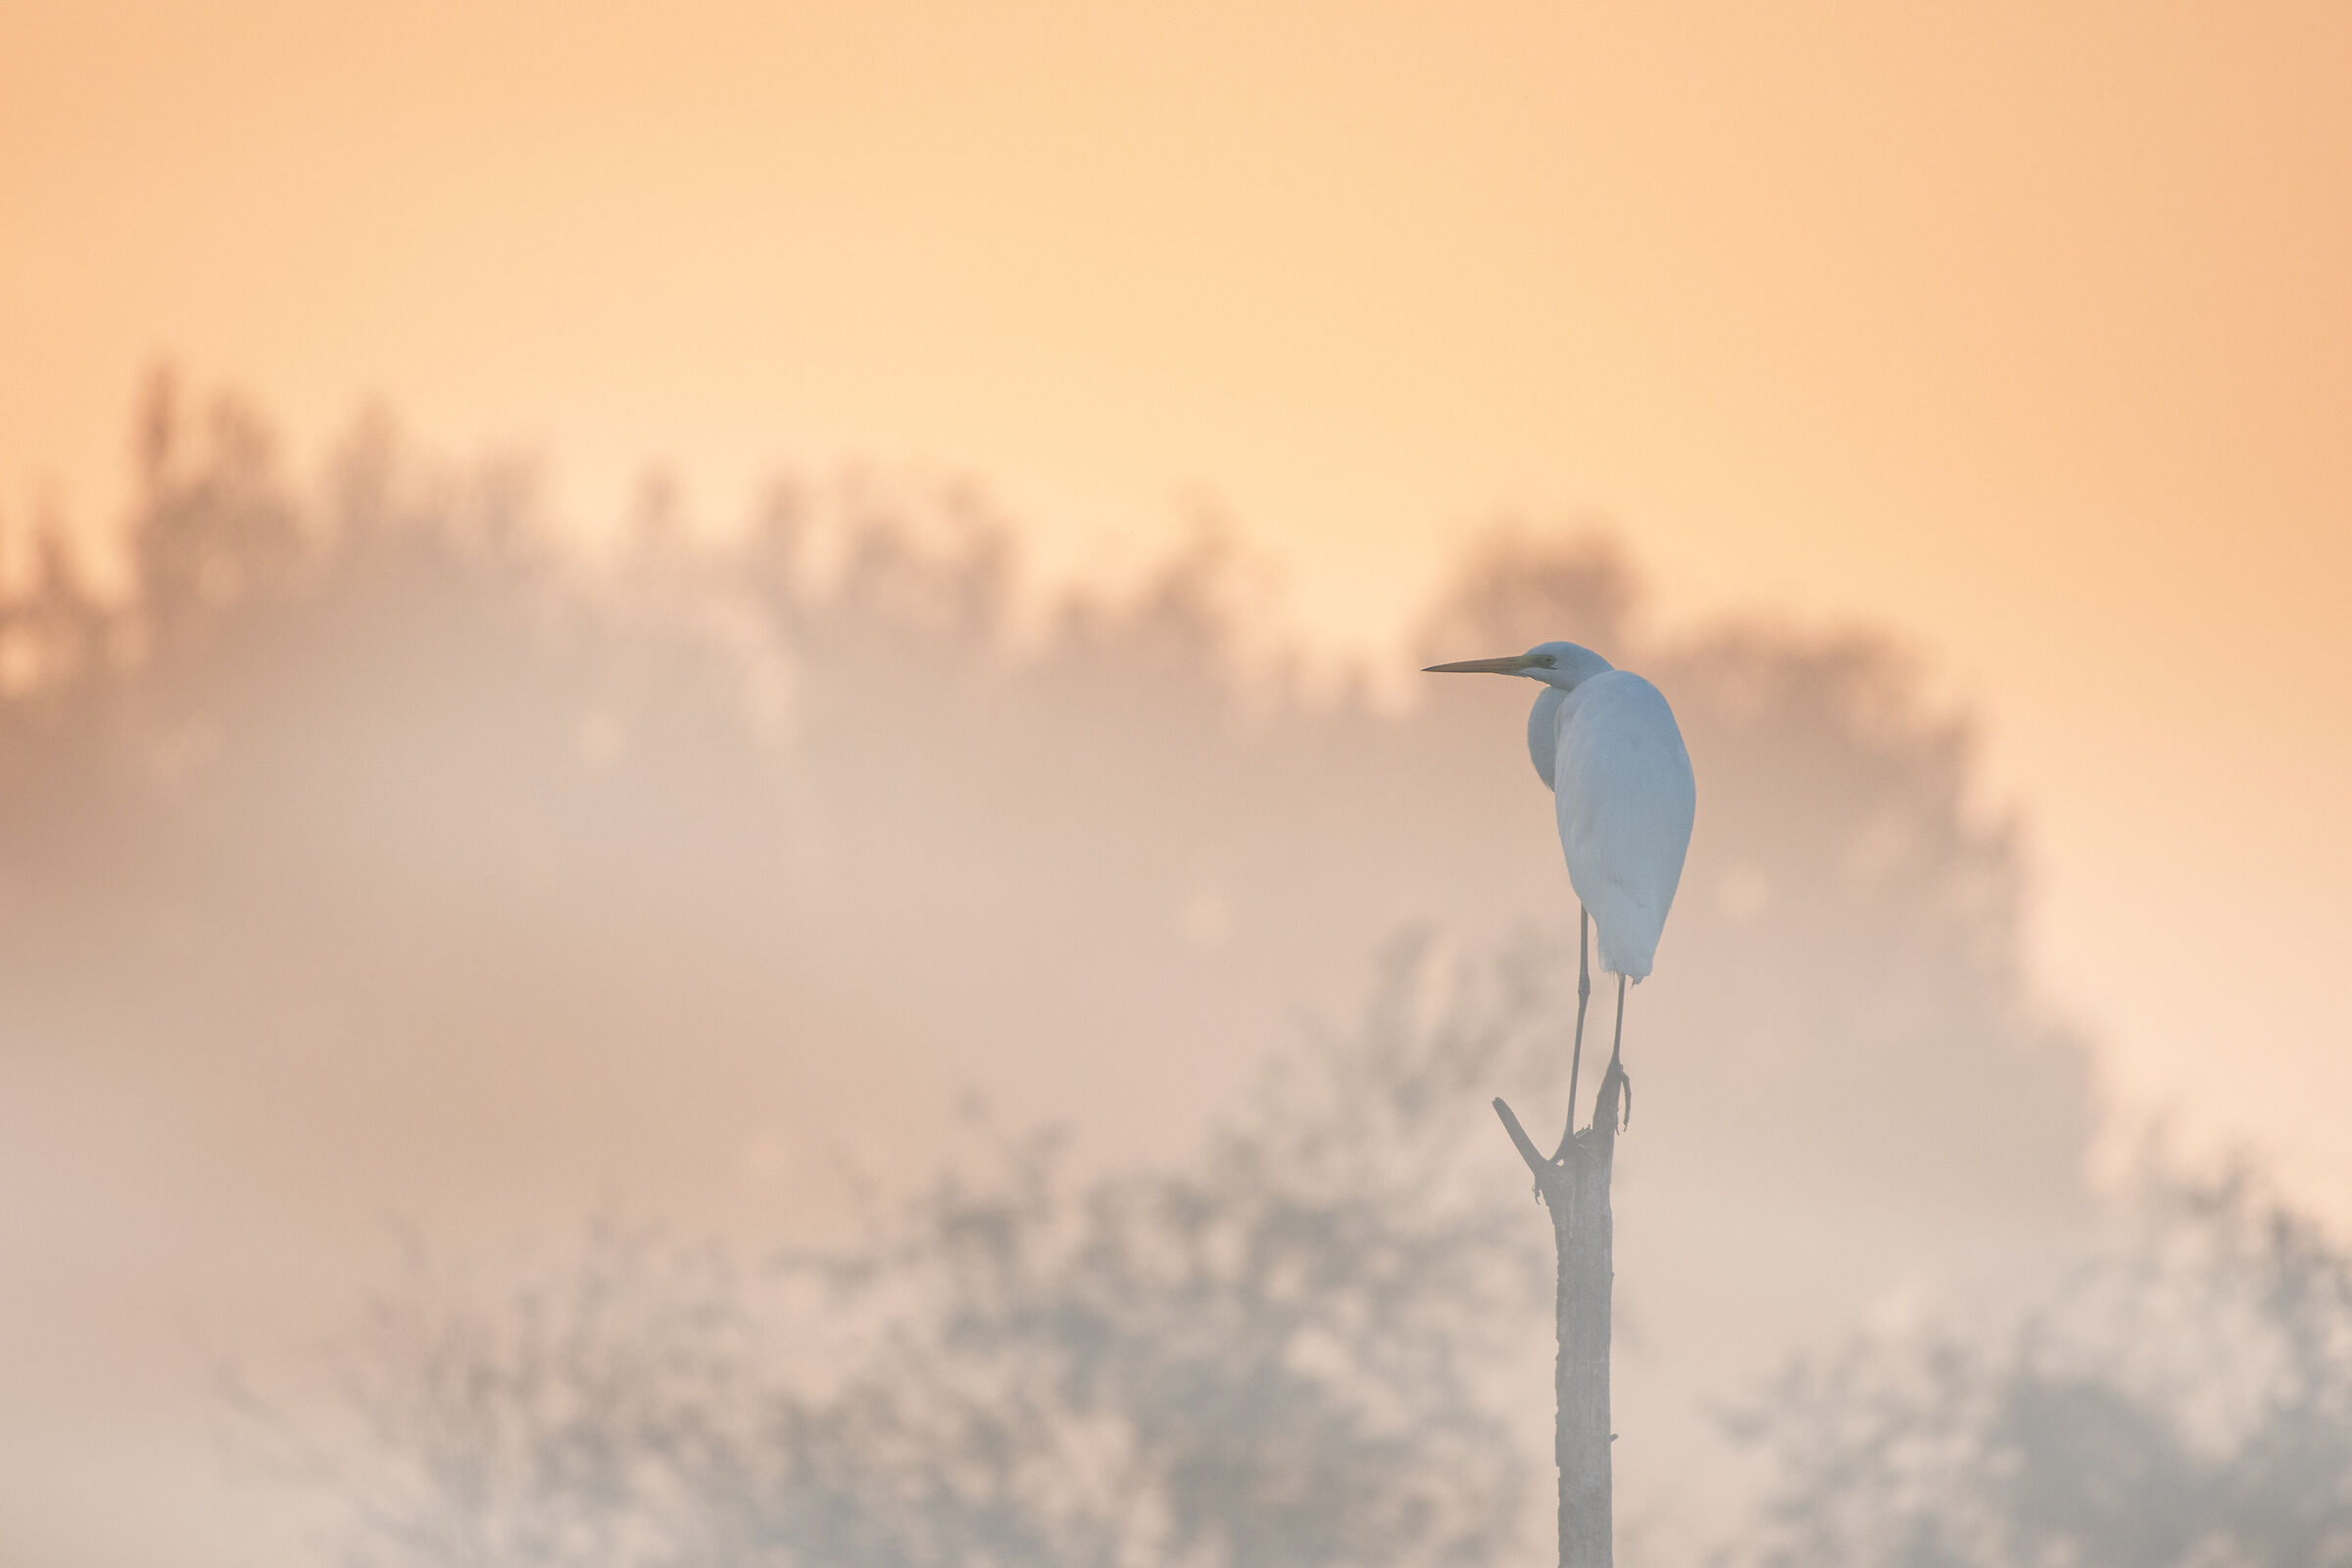 Great white heron at dawn...